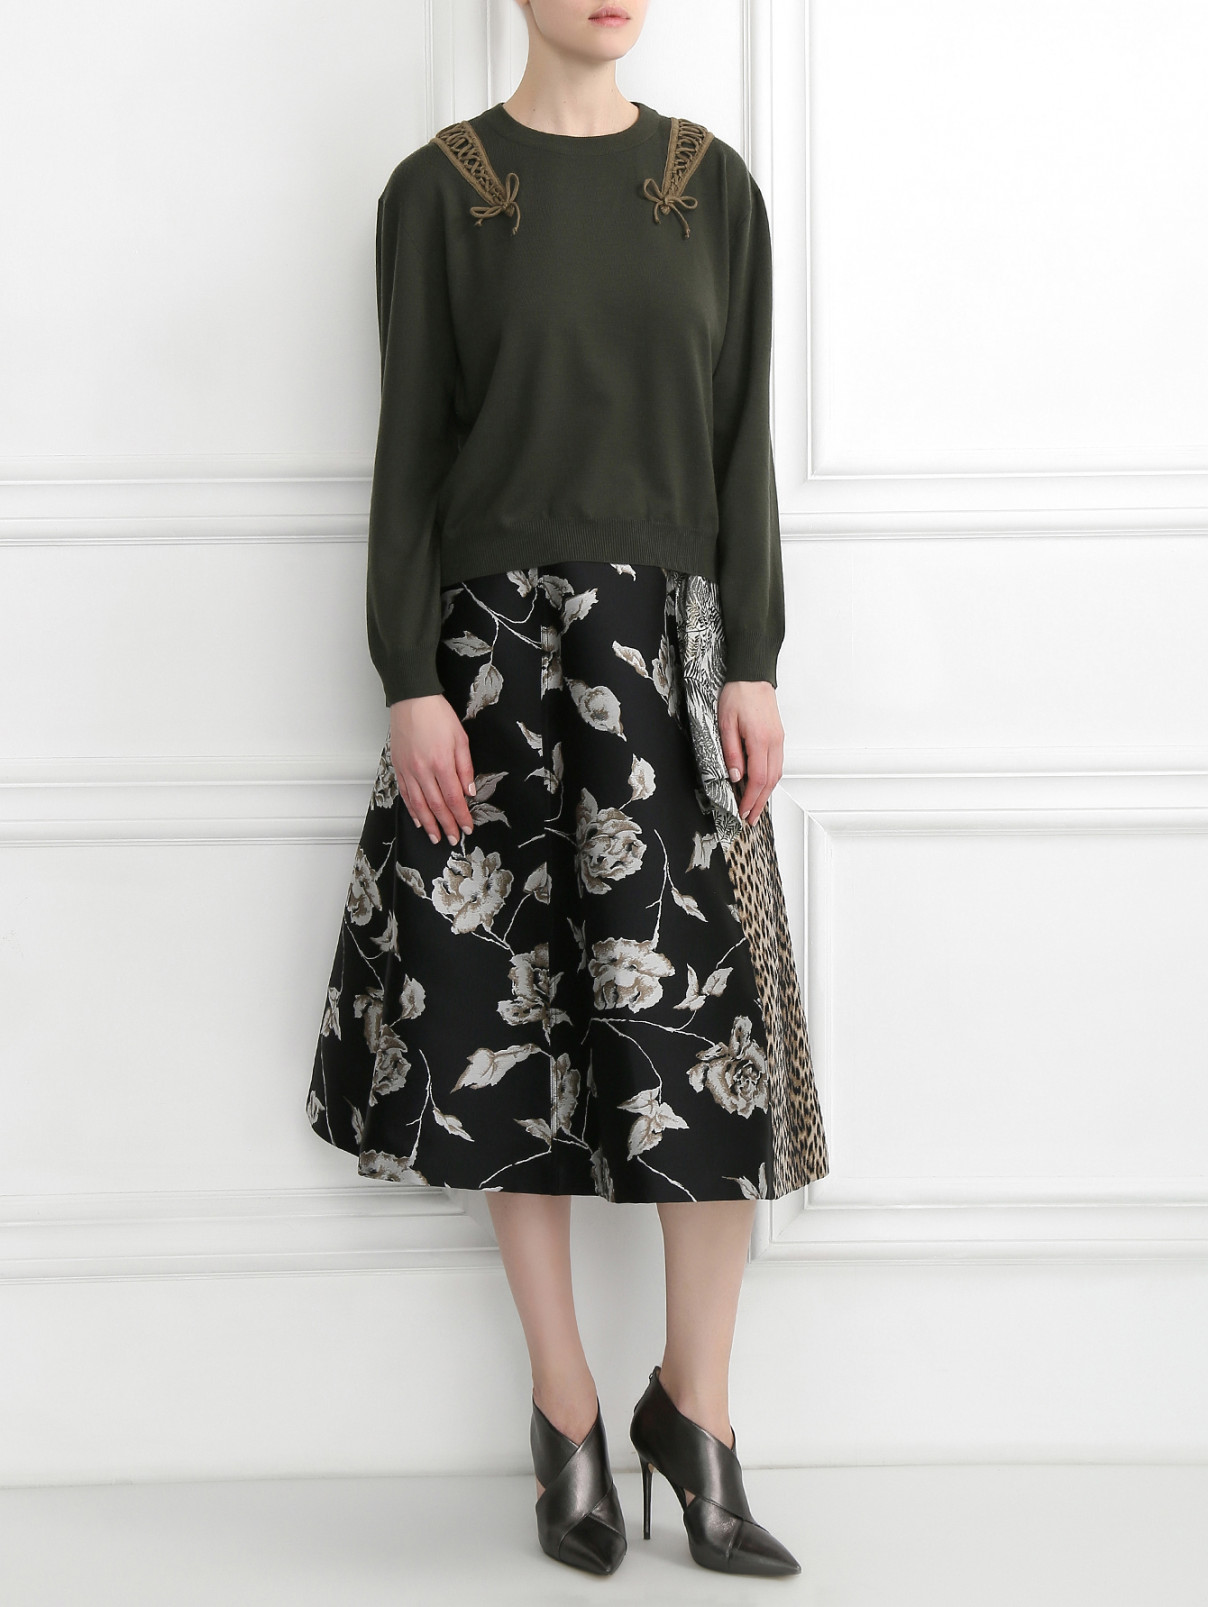 Джемпер из шерсти мелкой вязки с декором Moschino Couture  –  Модель Общий вид  – Цвет:  Зеленый